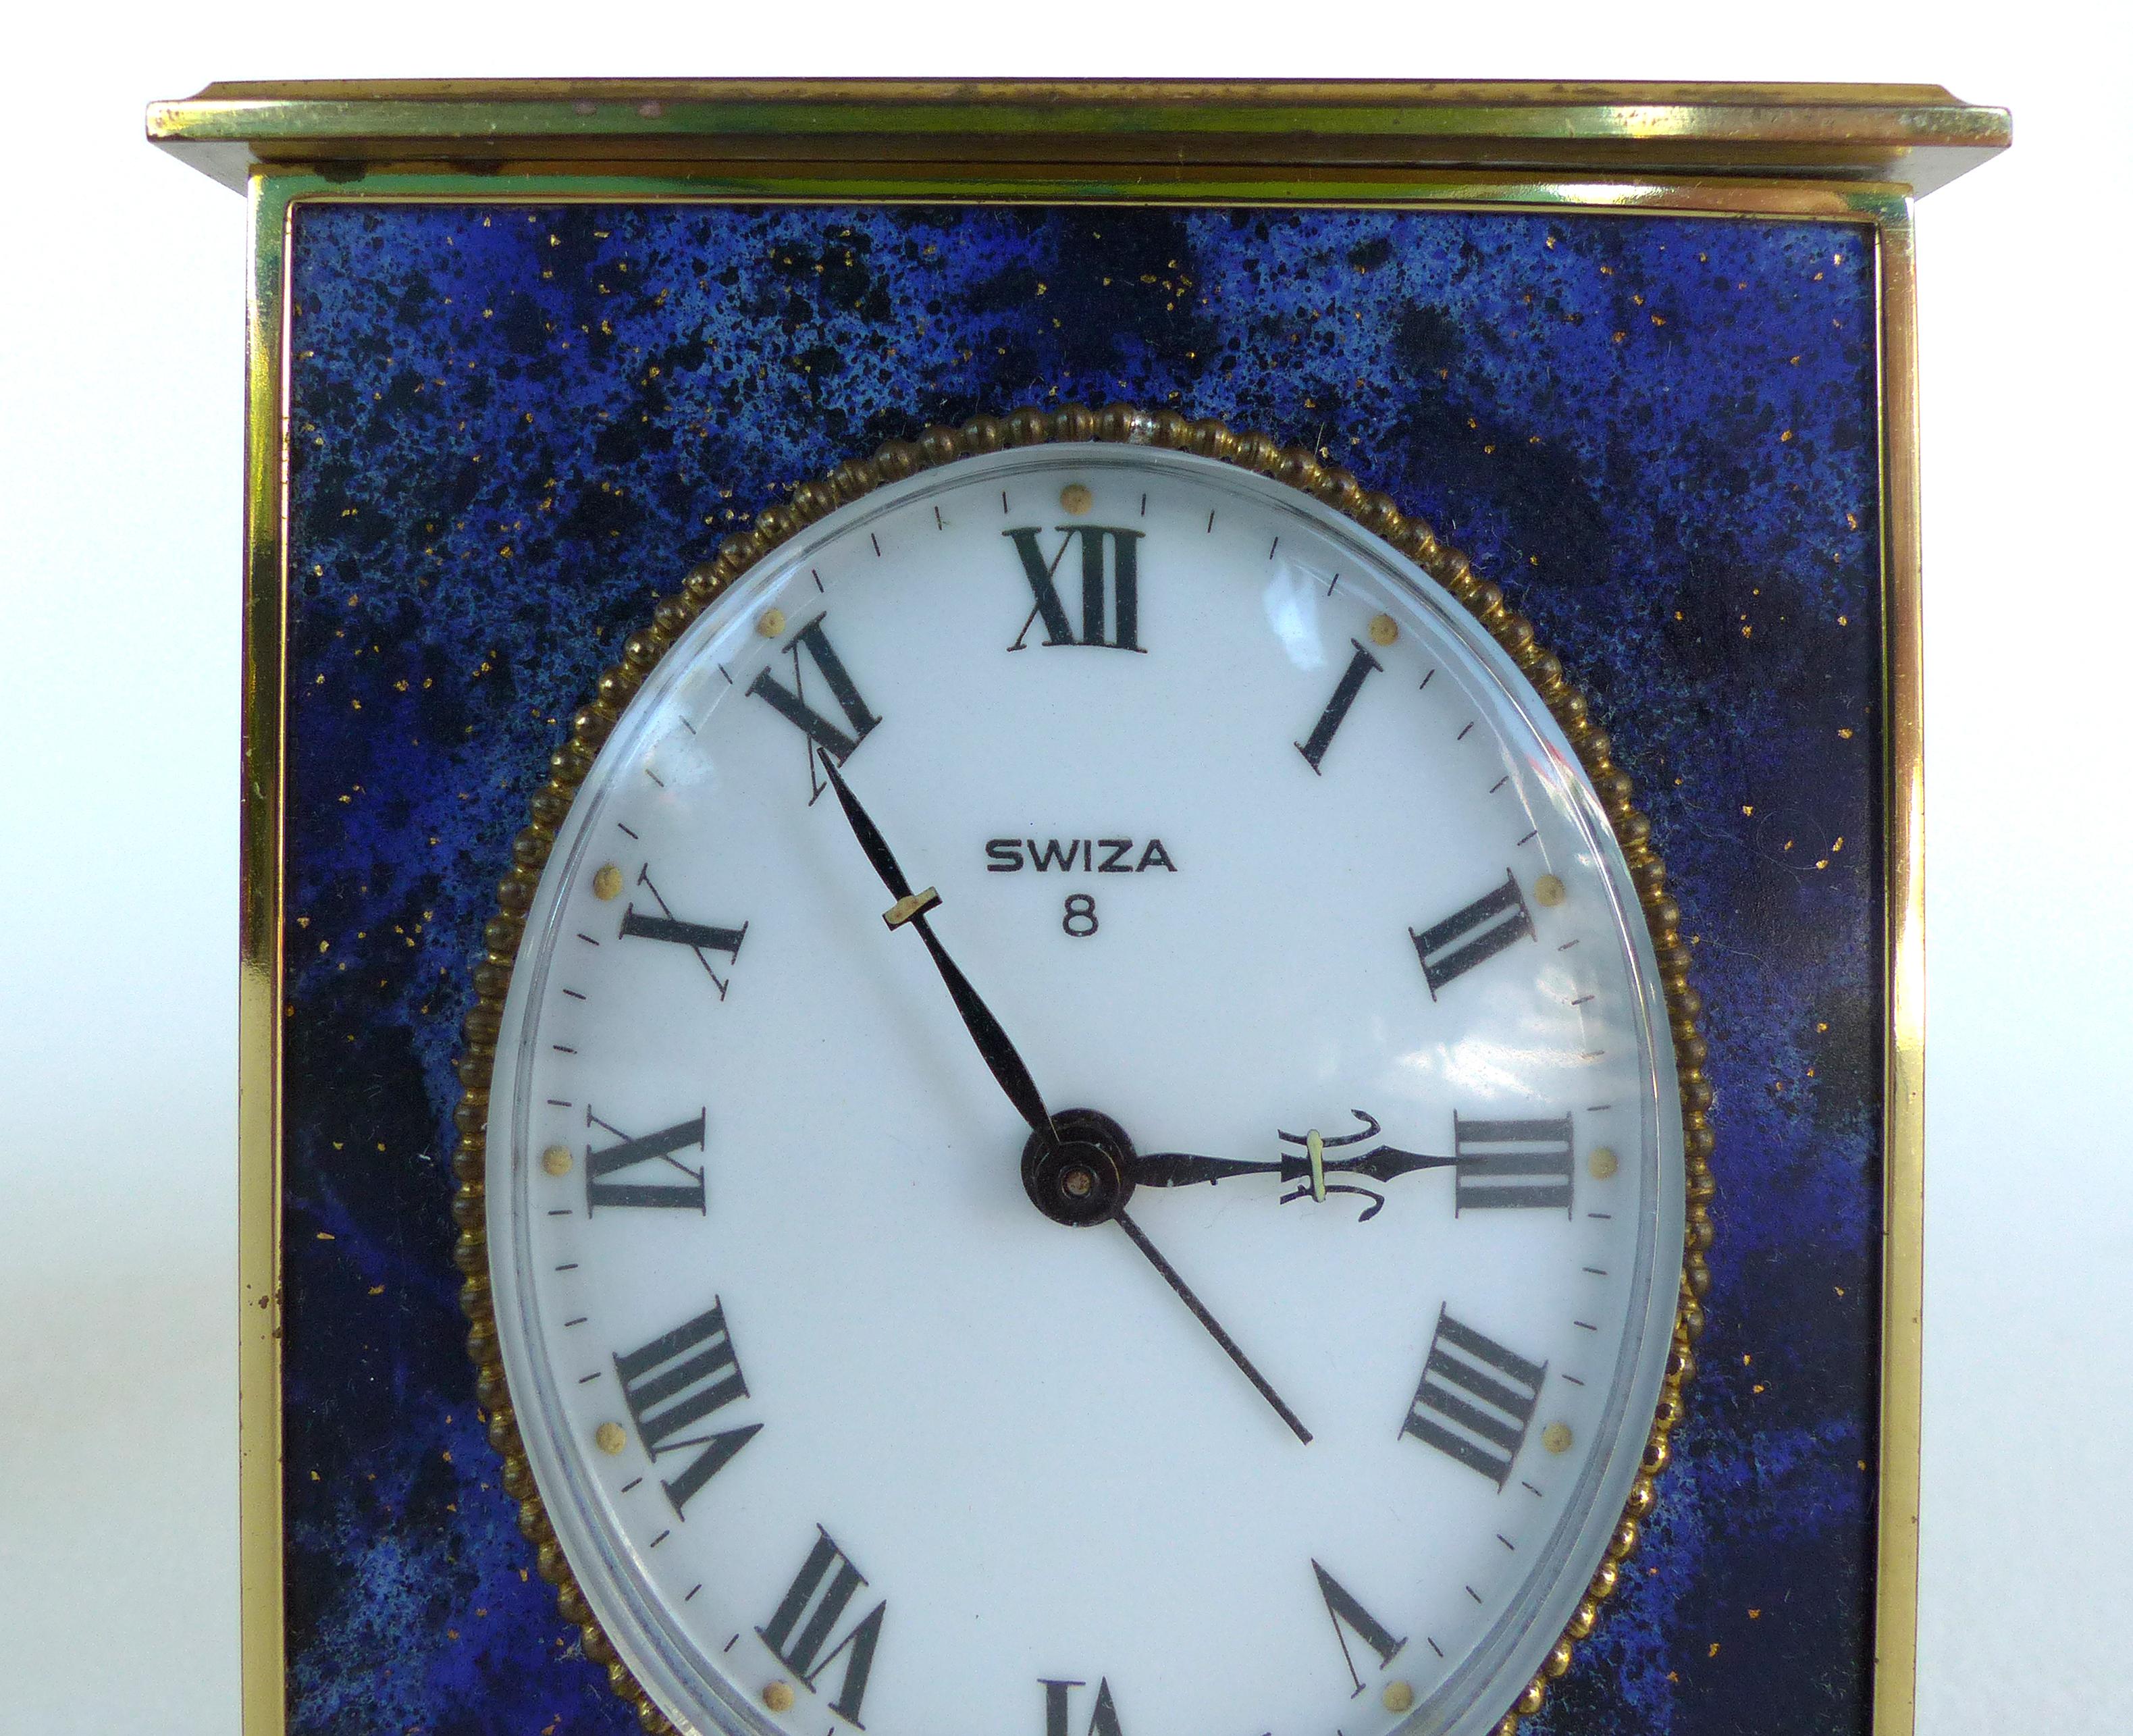 swiza 8 clock price